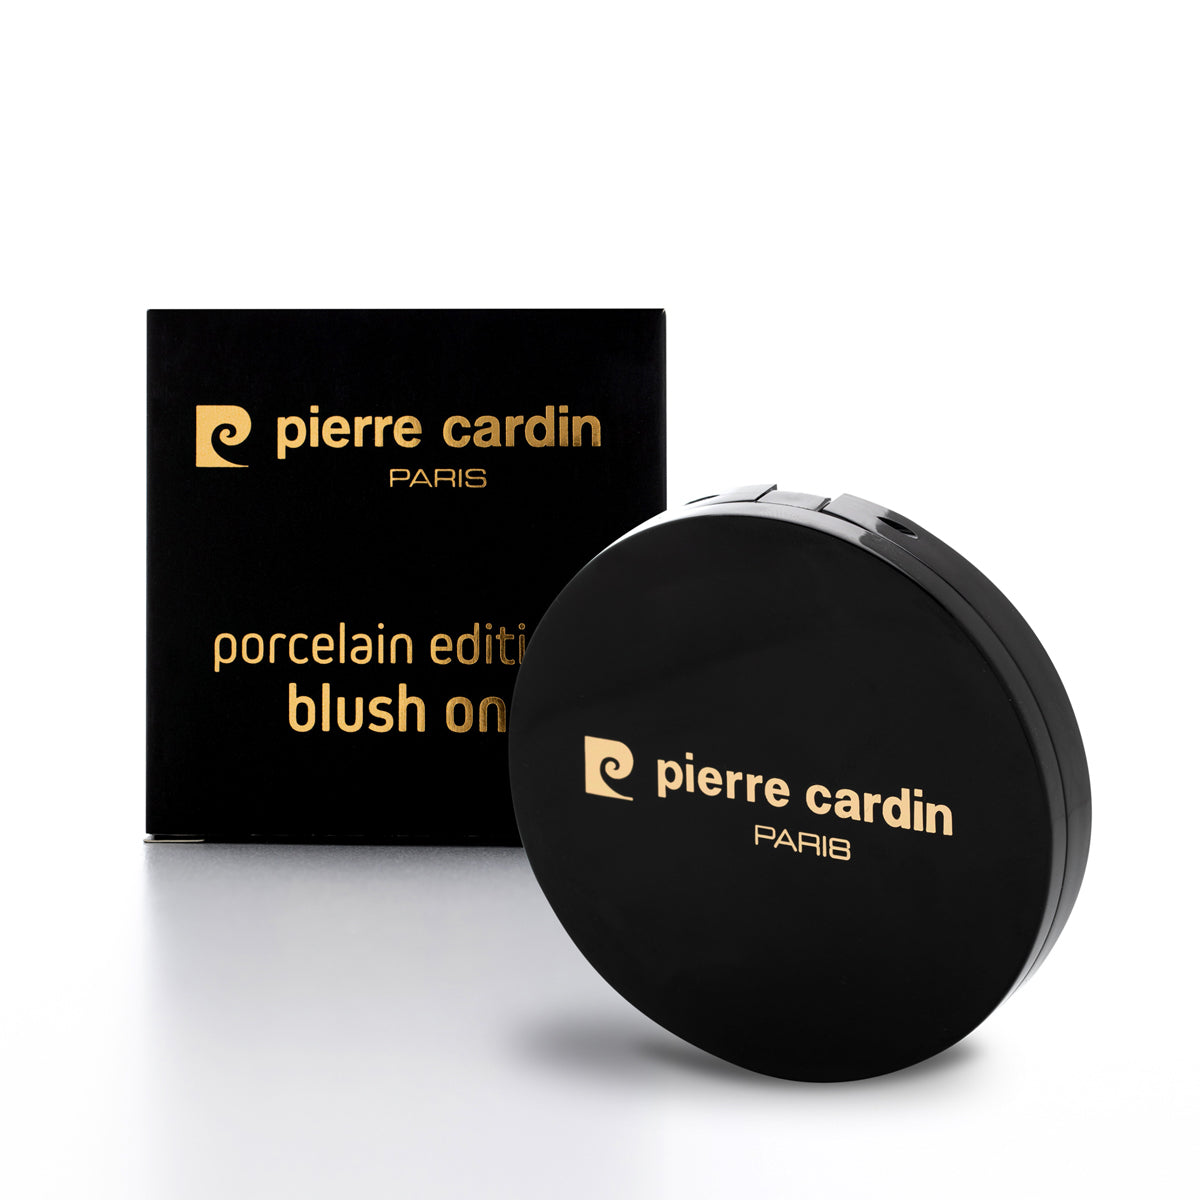 Pierre Cardin Edition Porcelaine Blush Sur Pêche Saumon 806 - 5 gr